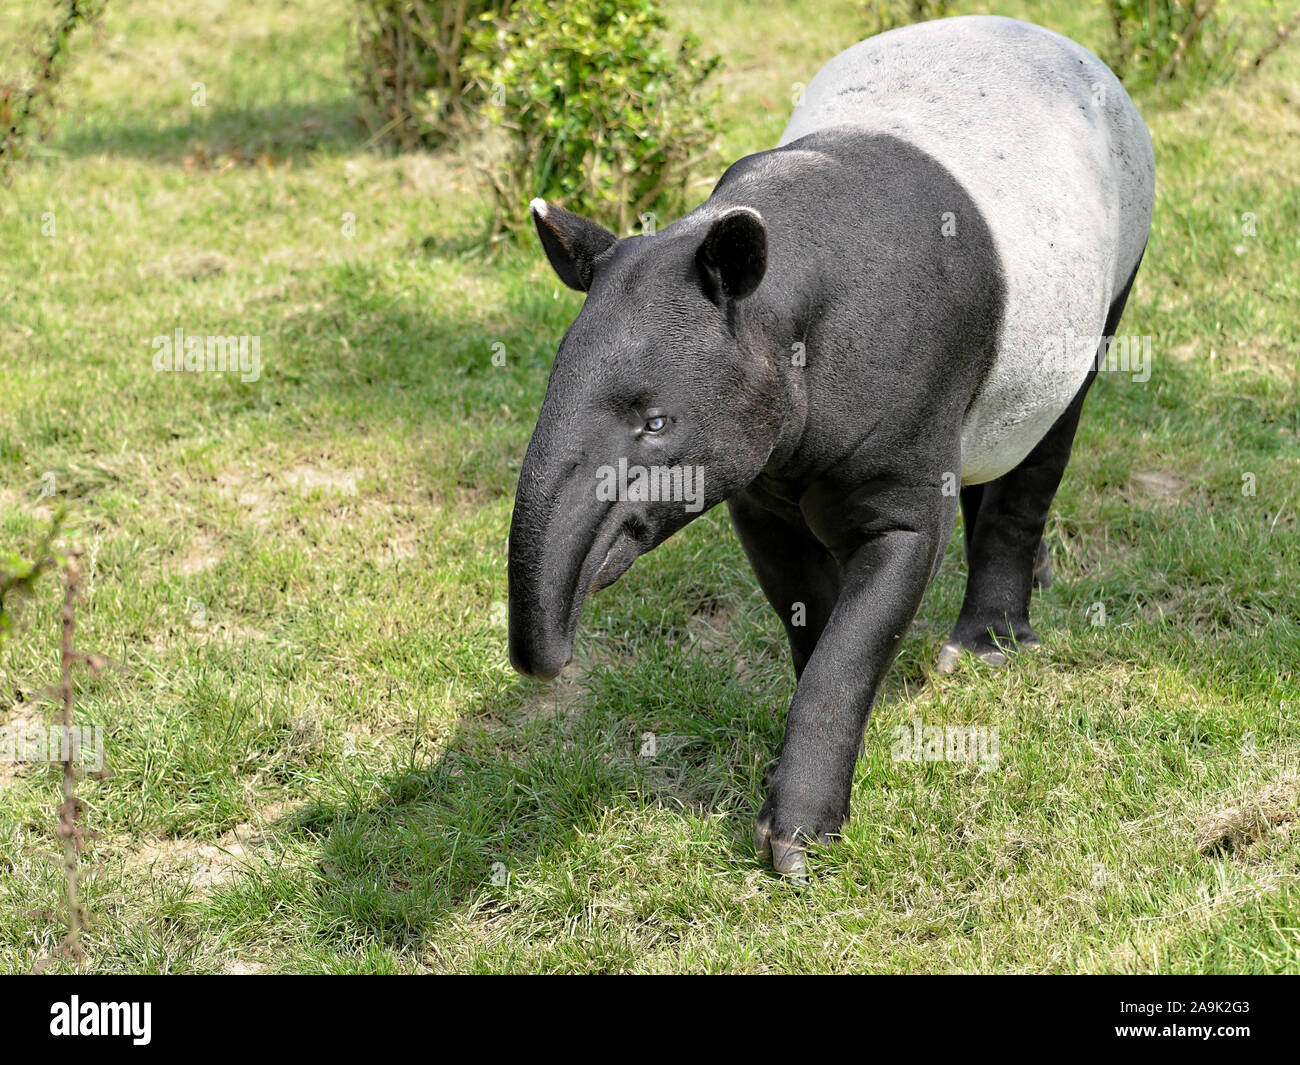 Malayan tapir (Tapirus indicus) walking on grass and viewed of front Stock Photo